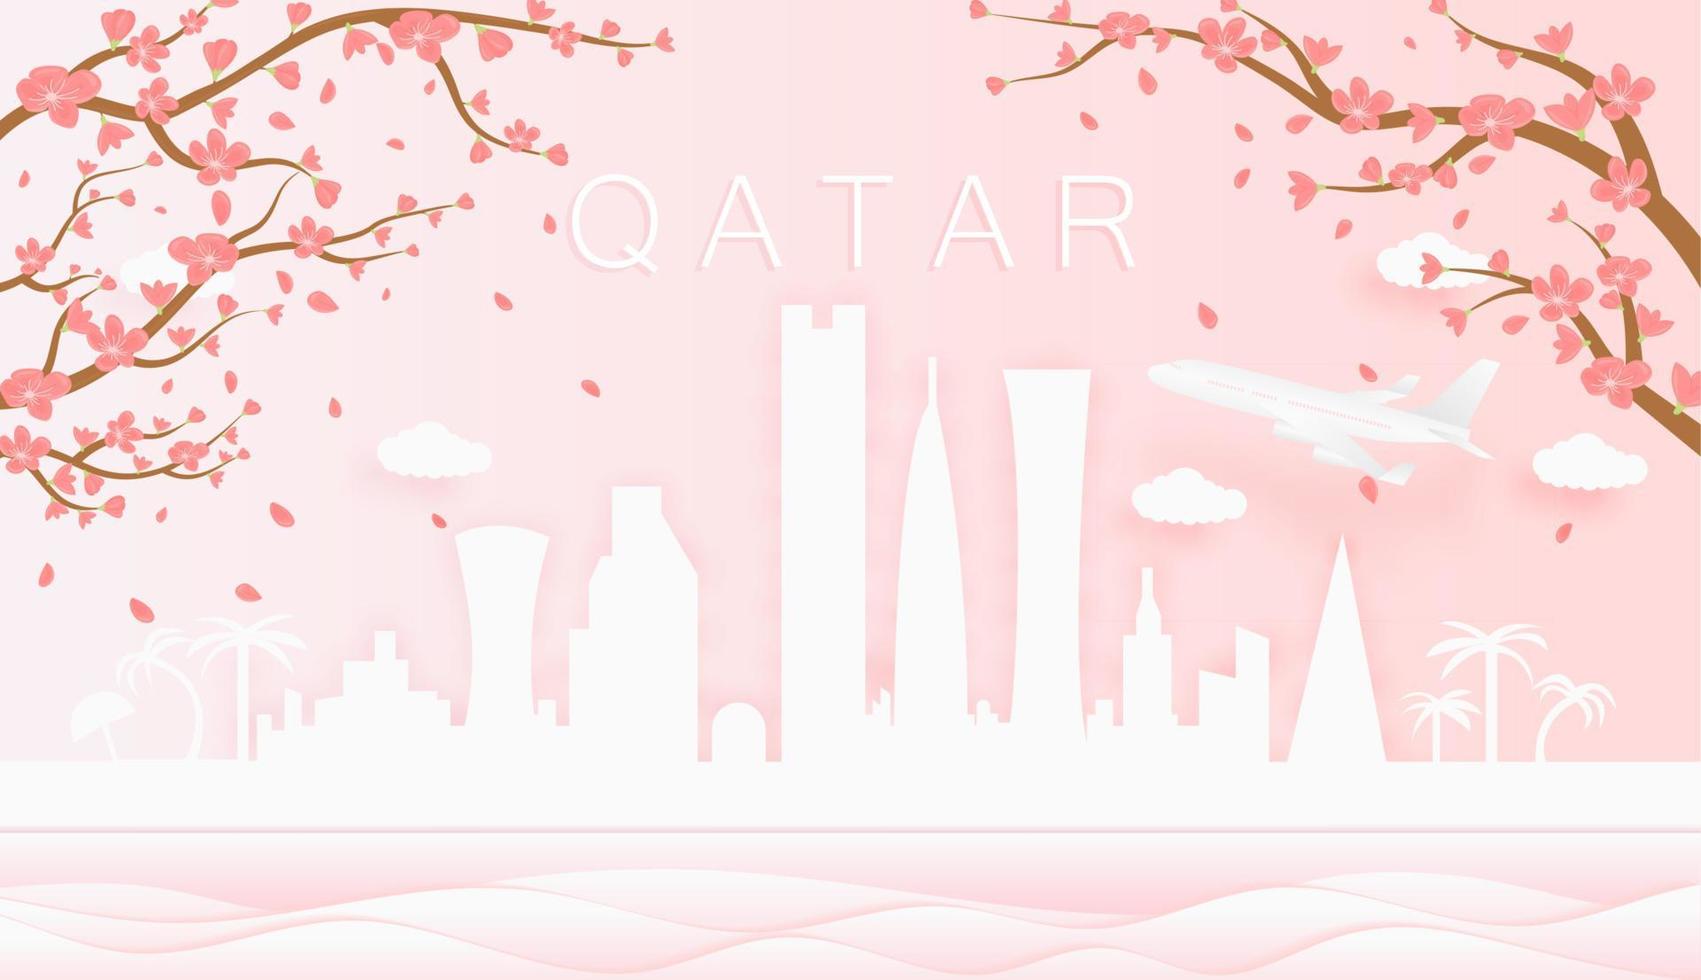 Panorama Reise Postkarte, Poster, Tour Werbung von Welt berühmt Sehenswürdigkeiten von Katar, Frühling Jahreszeit mit Blühen Blumen im Baum im Papier Schnitt Stil Vektor Symbol